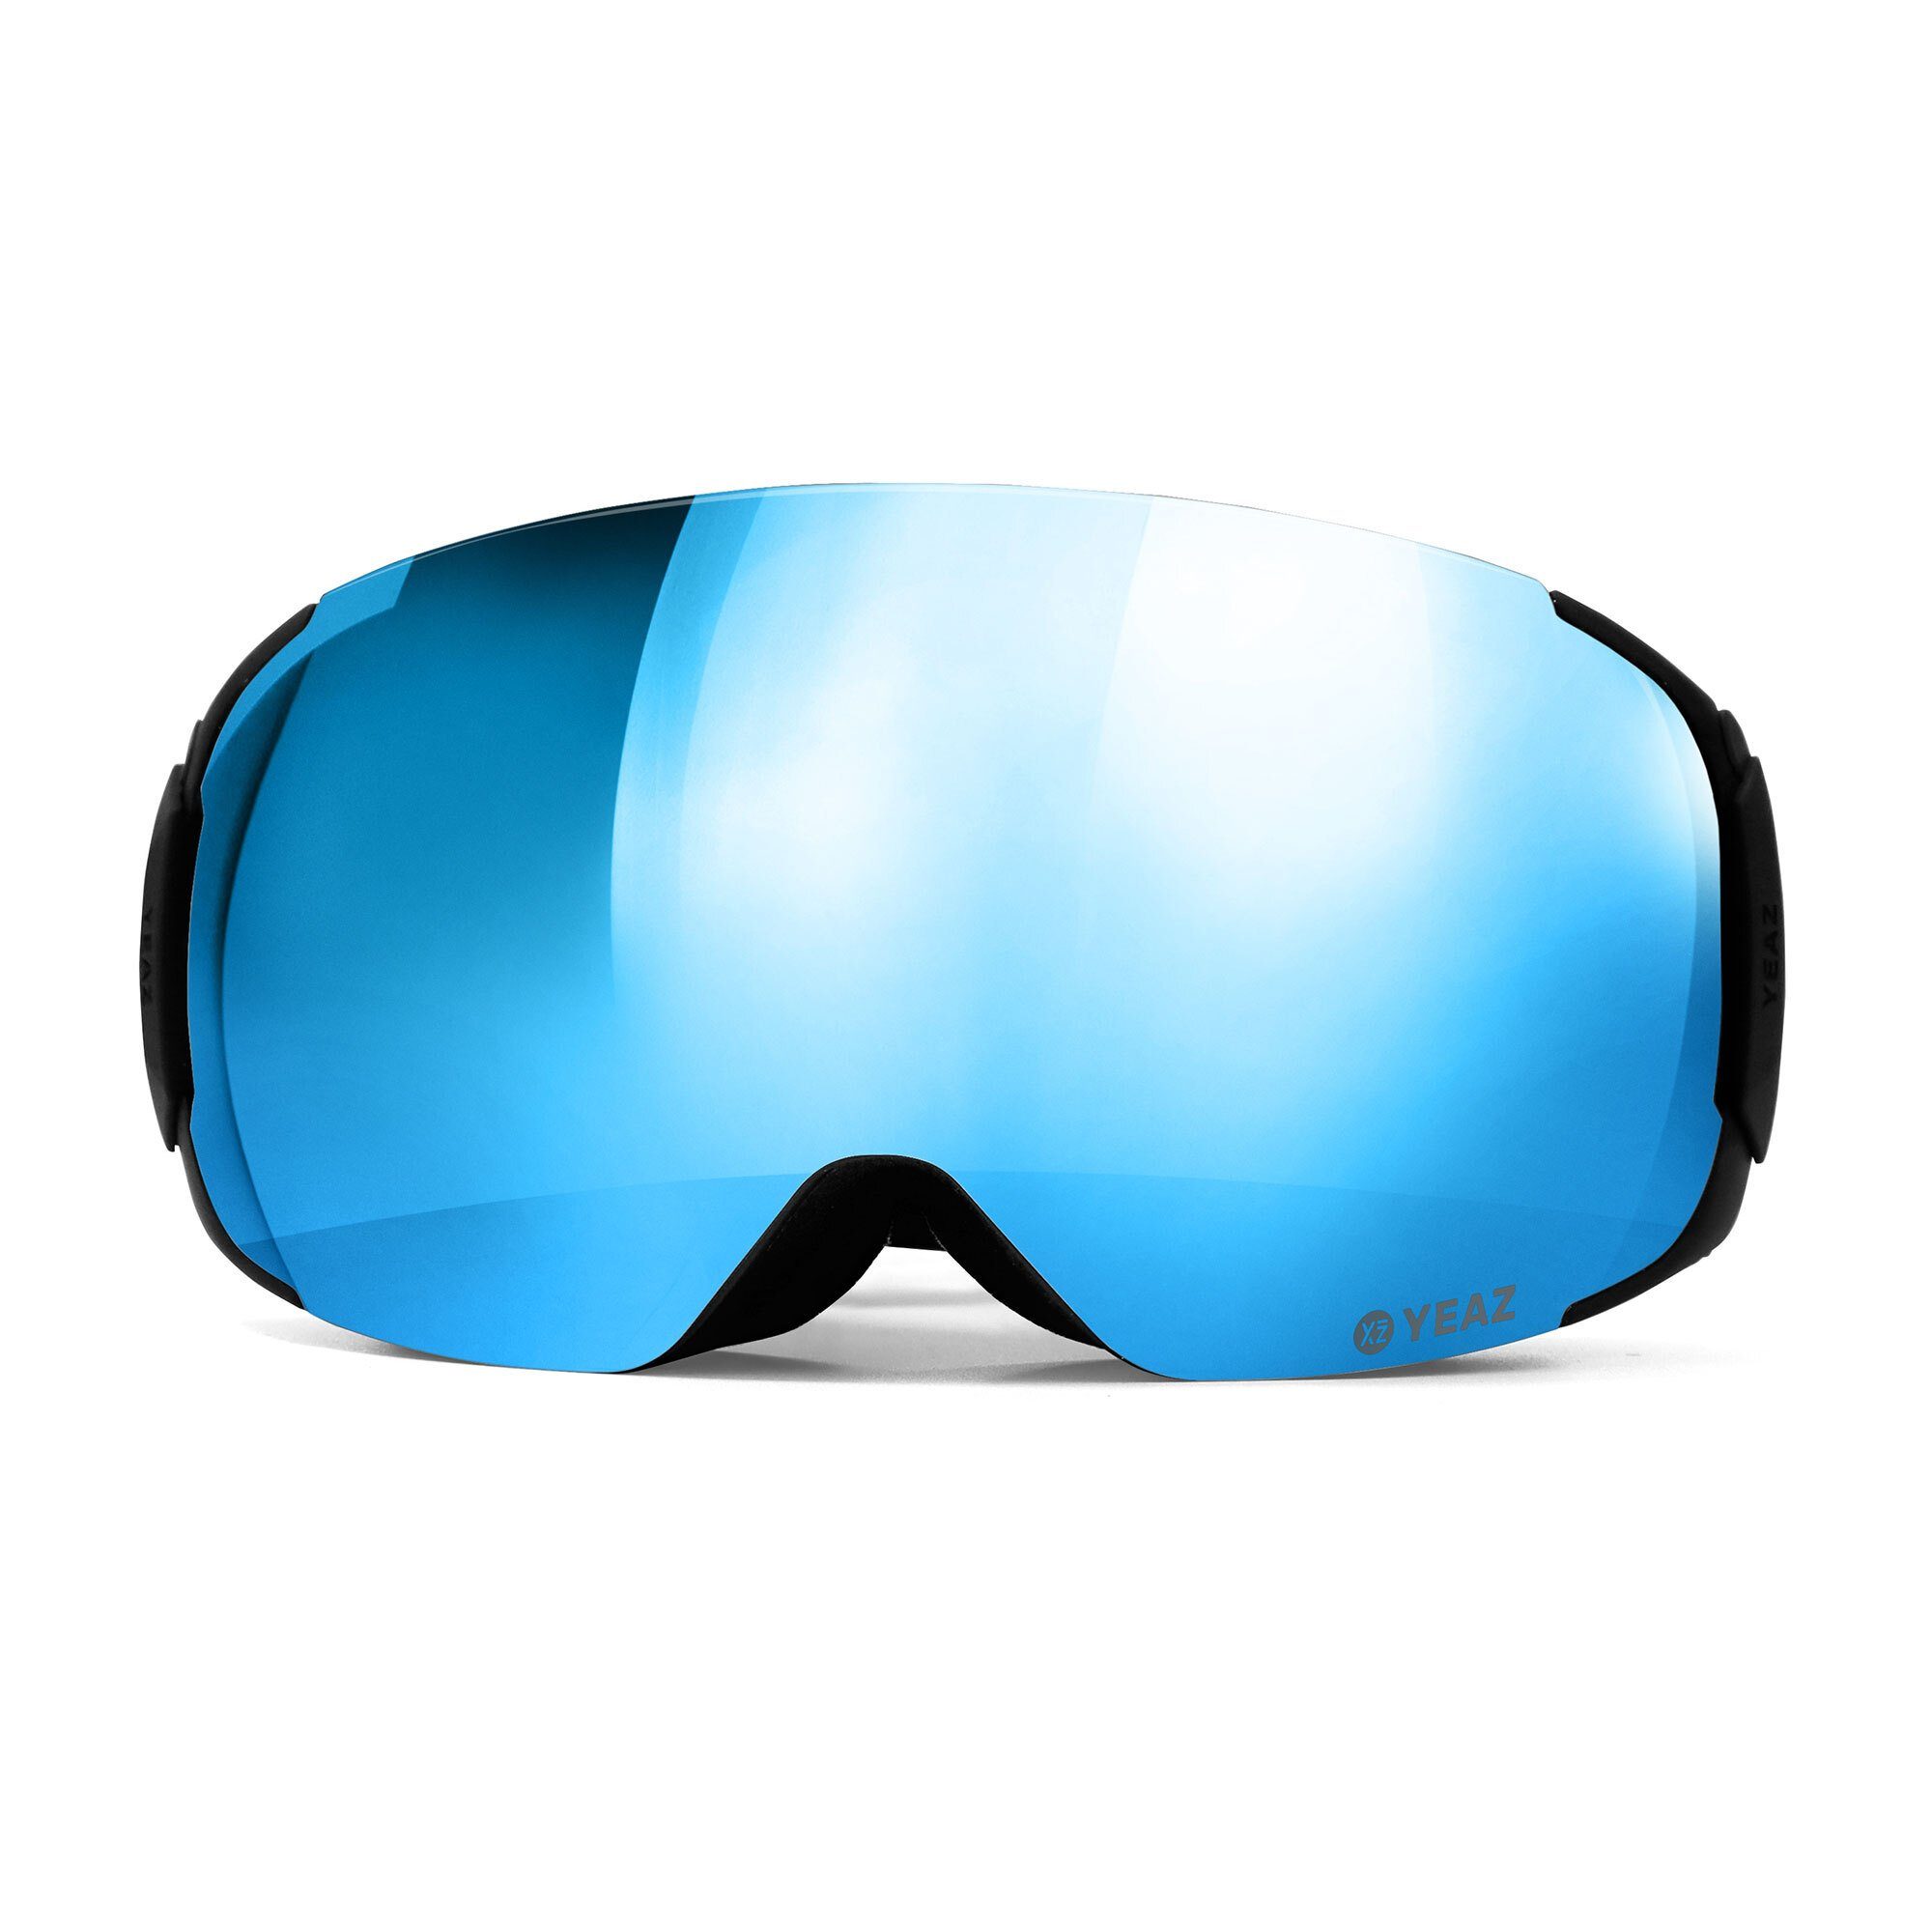 YEAZ Skibrille TWEAK-X ski- und snowboard-brille, Jugendliche für und Snowboardbrille und Erwachsene Premium-Ski